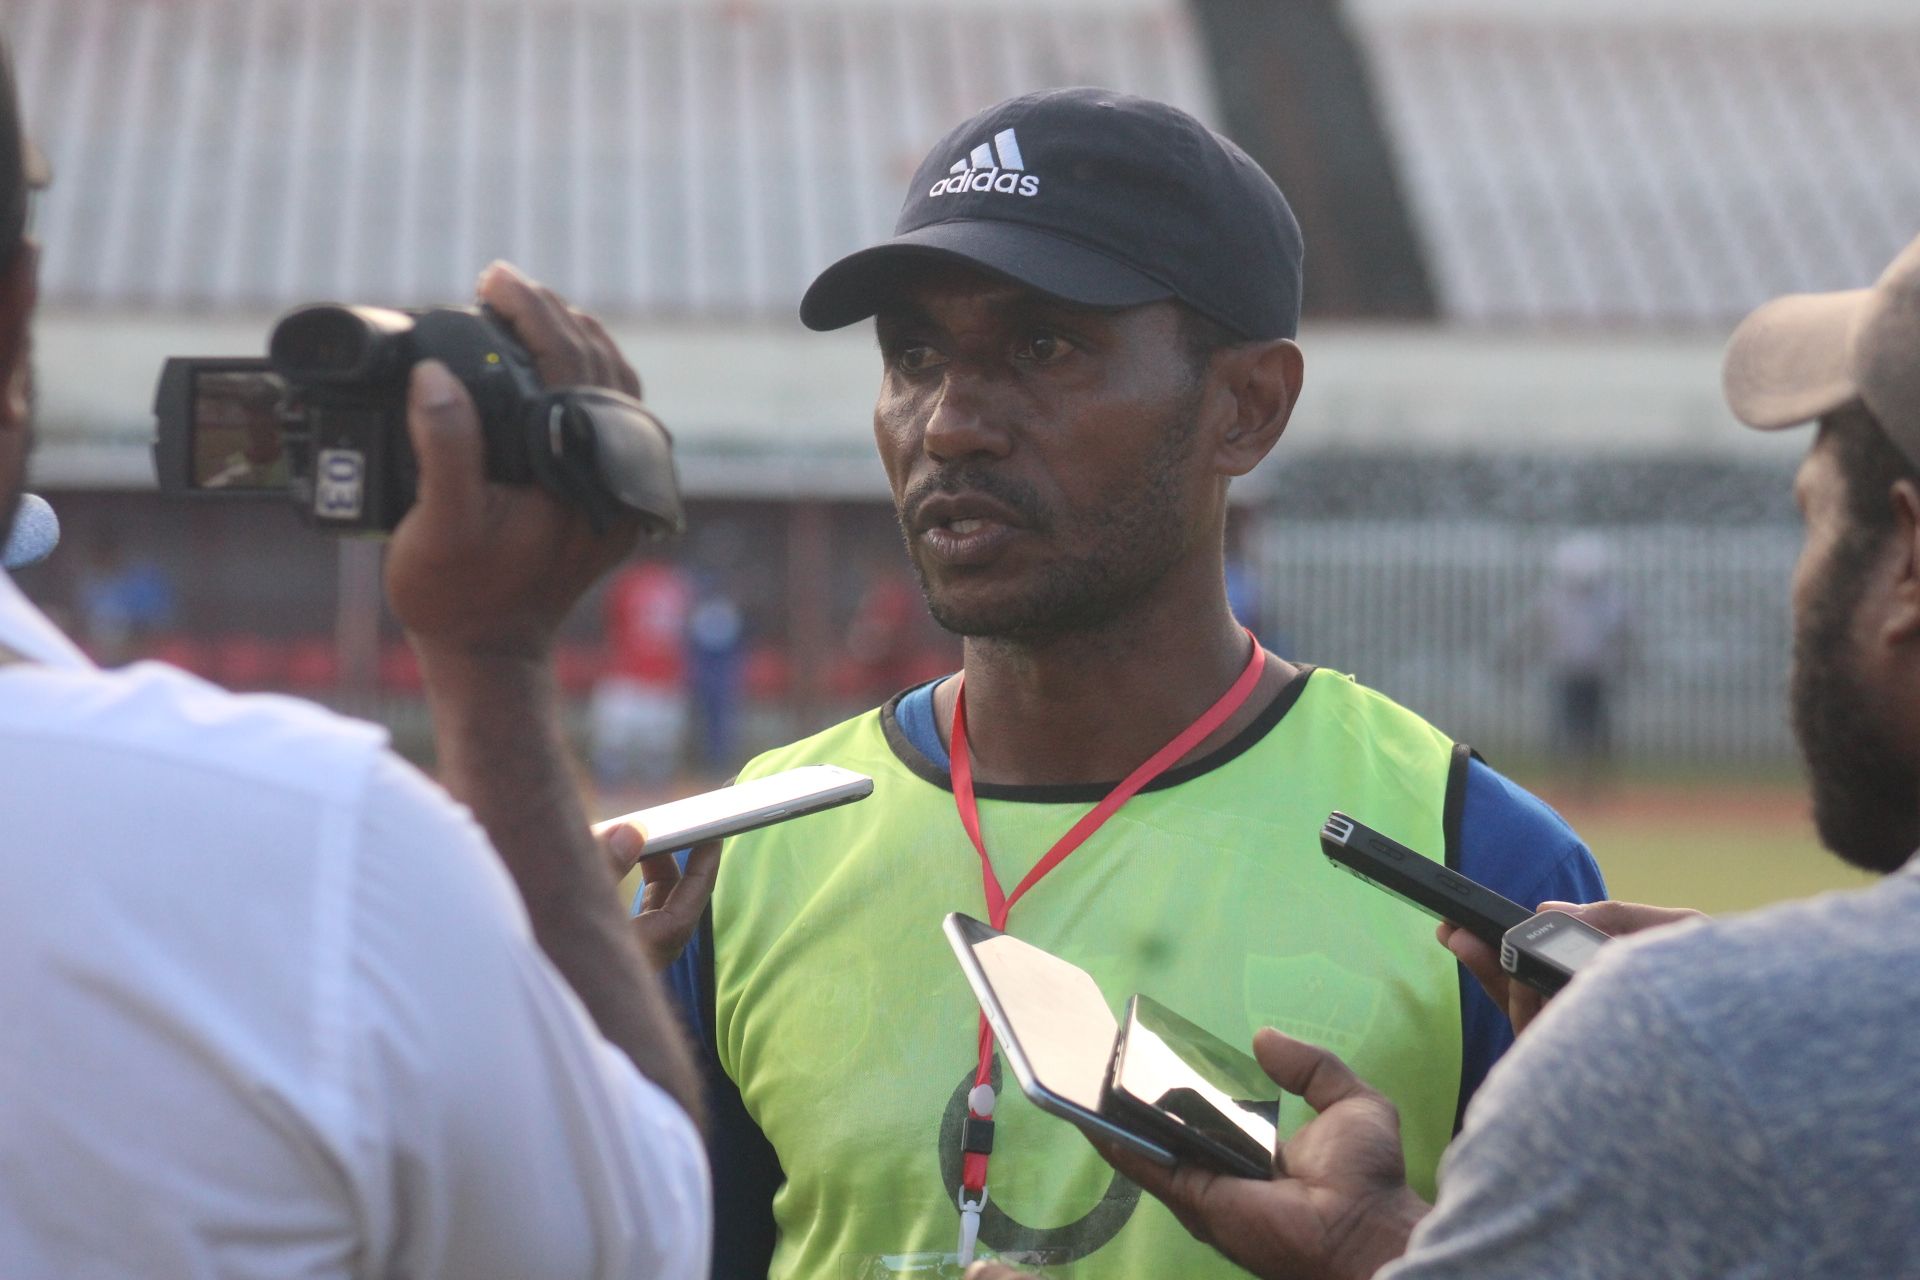 Pelatih tim Persinab Nabire, Izaak Wanggai ketika ditemui awak media di Stadion Mandala Jayapura, Papua, usai pertandingan, Rabu 25 Januari 2023 dok (PORTAL PAPUA)